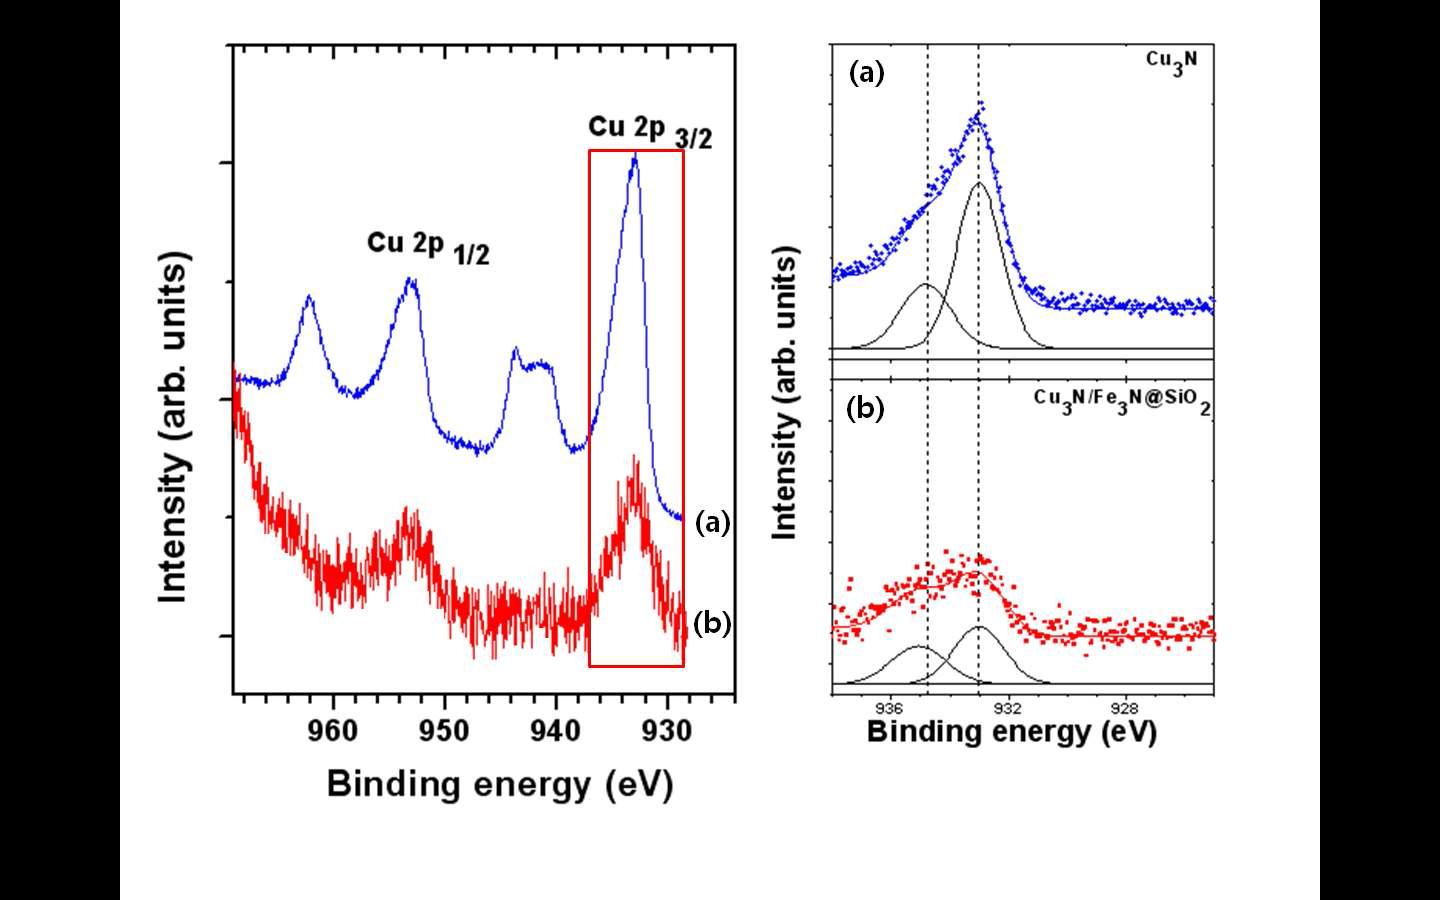 Cu 2p X-ray photoemission spectra: (a)는 Cu3N 벌크 분말이고 (b)는 Cu3N/Fe3N@SiO2 입자에 대한 것. 오른쪽 그림은 Cu2p3/2 core level shifts 데이터를 포함하고 있음.